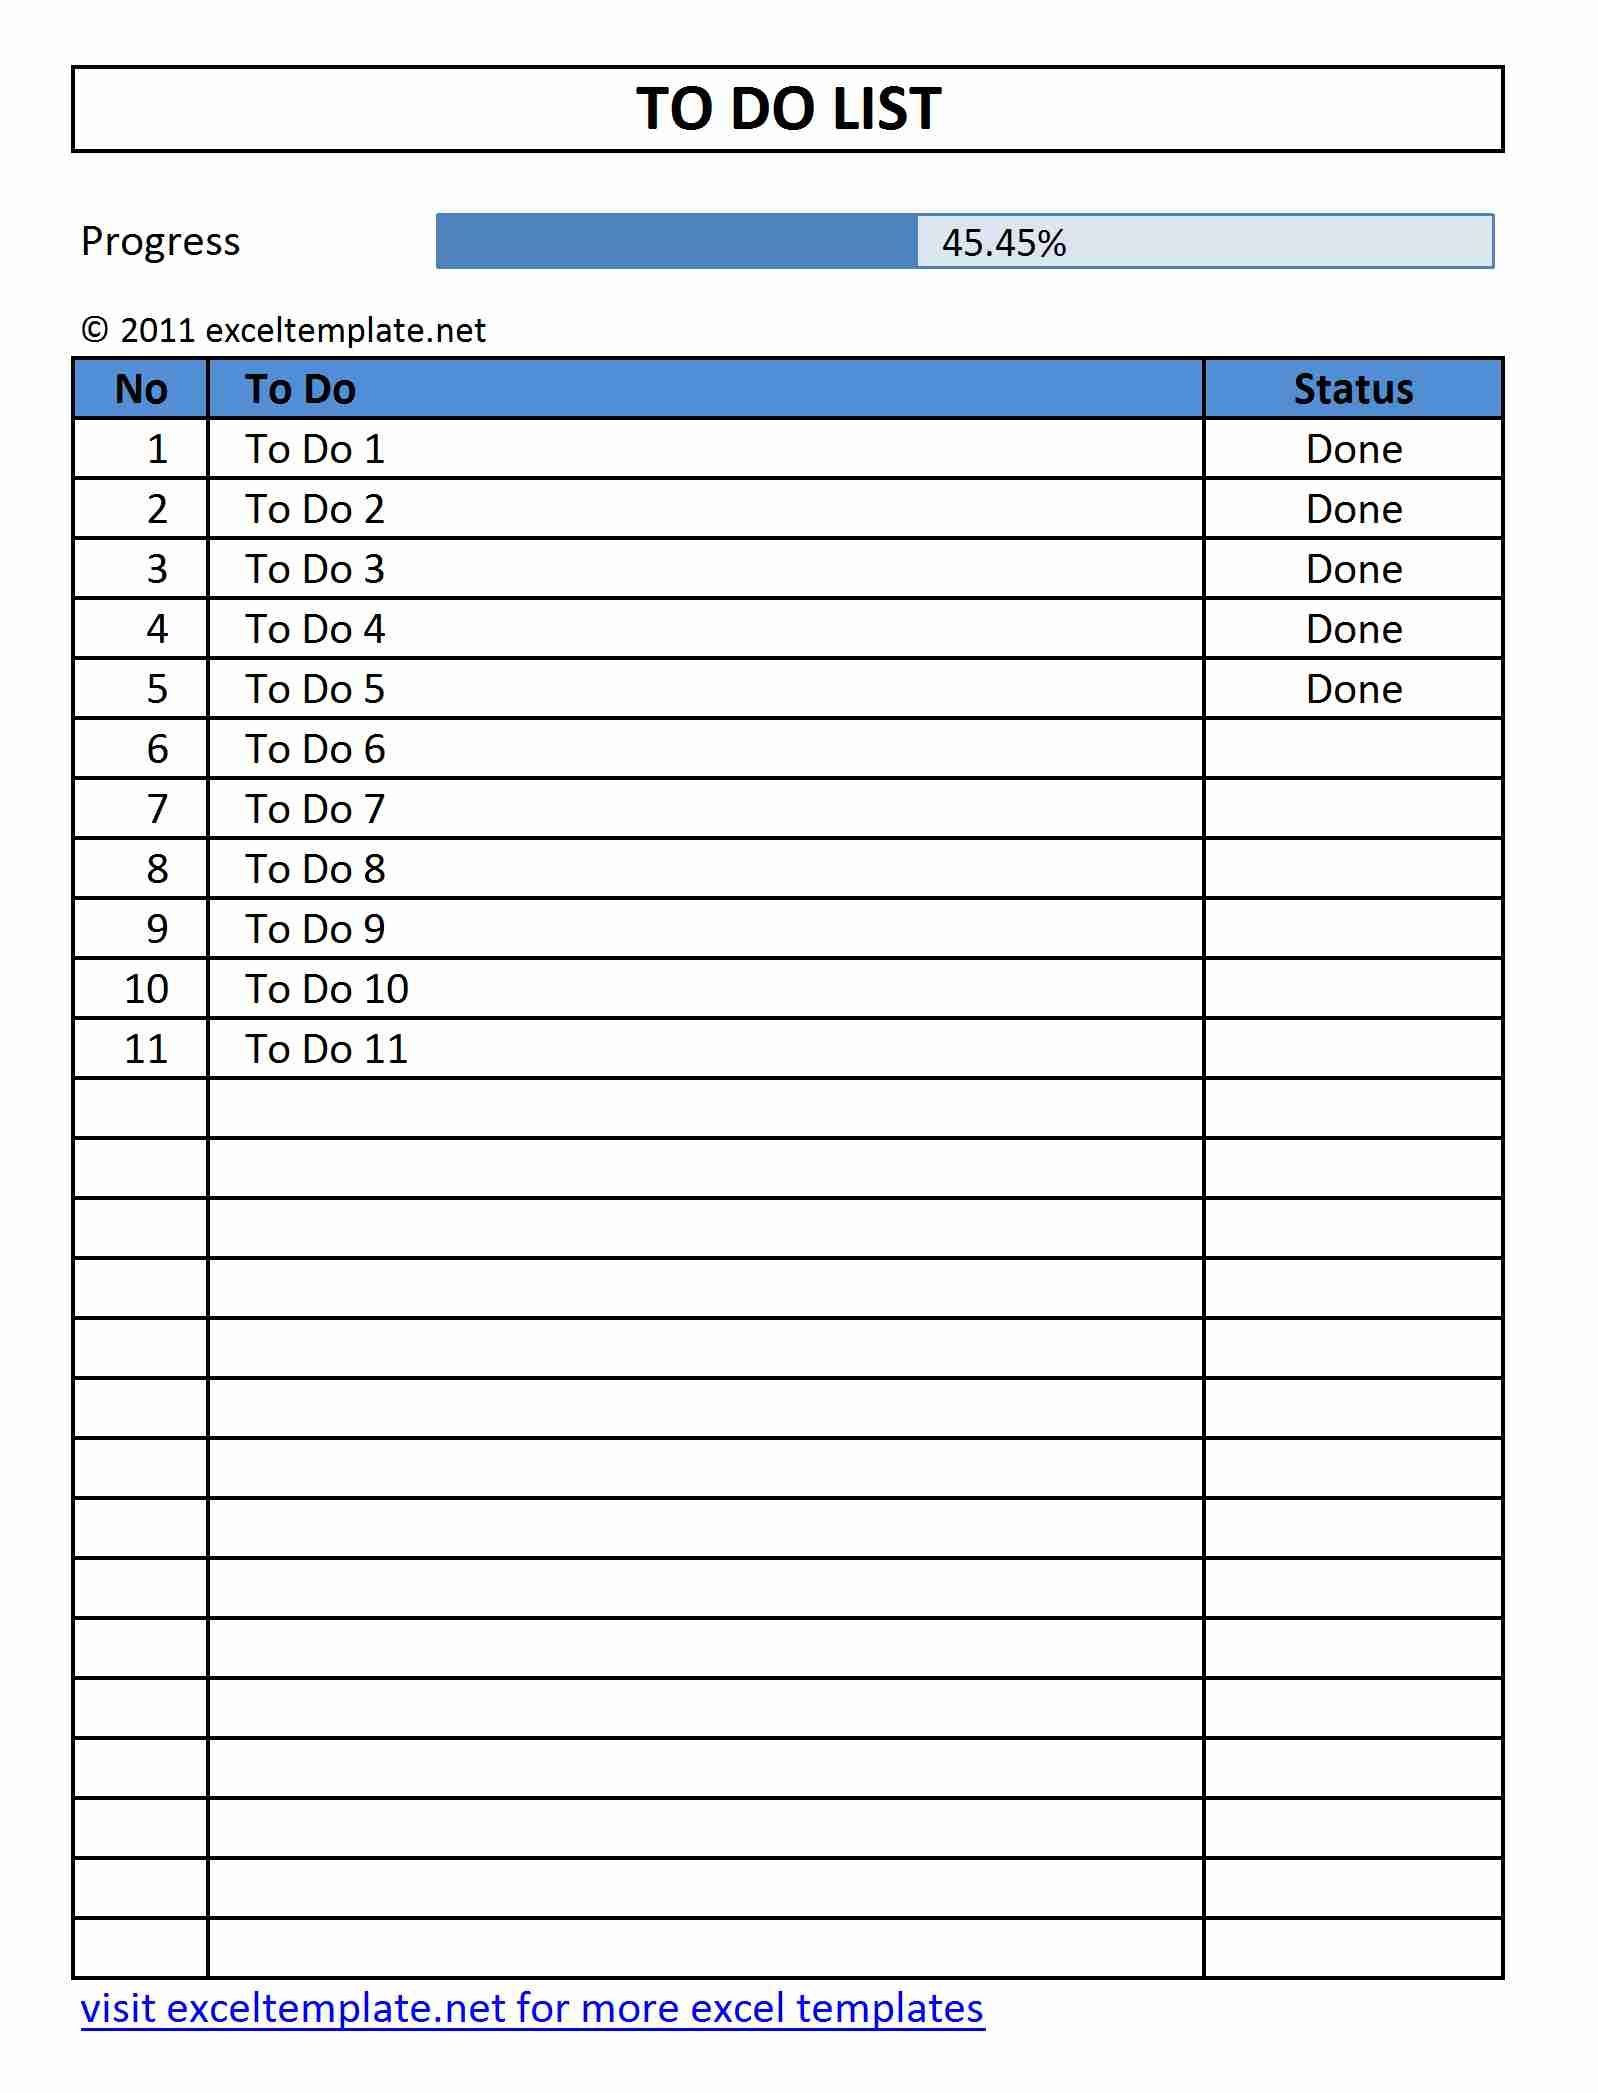 roster-spreadsheet-template-free-spreadsheet-downloa-roster-spreadsheet